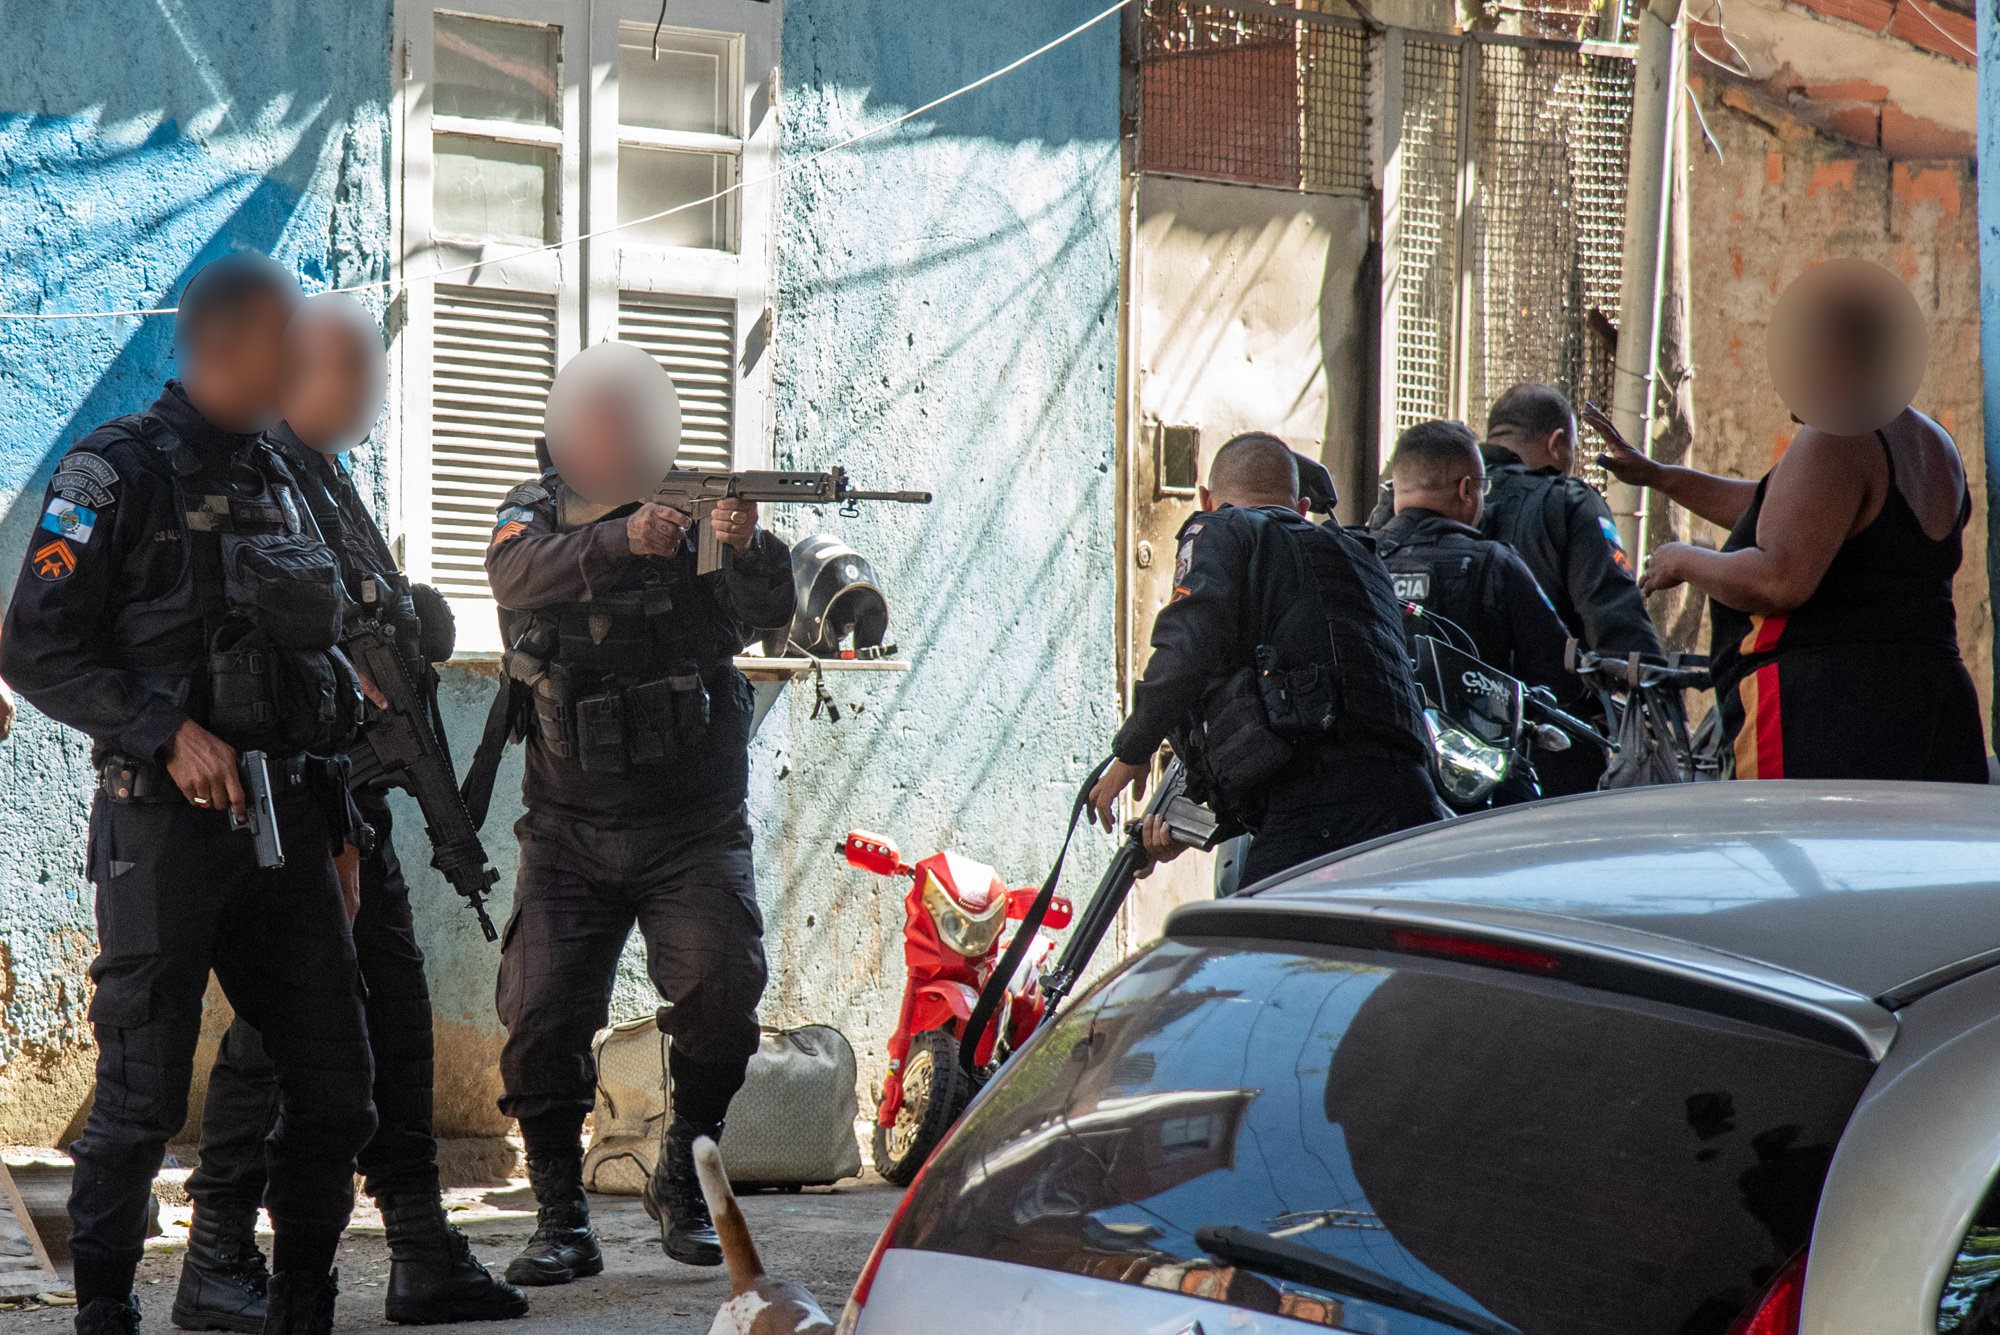 Policial Militar aponta fuzil para moradores, durante protesto contra remoção na Favela do Rato Molhado. Foto: Bárbara Dias